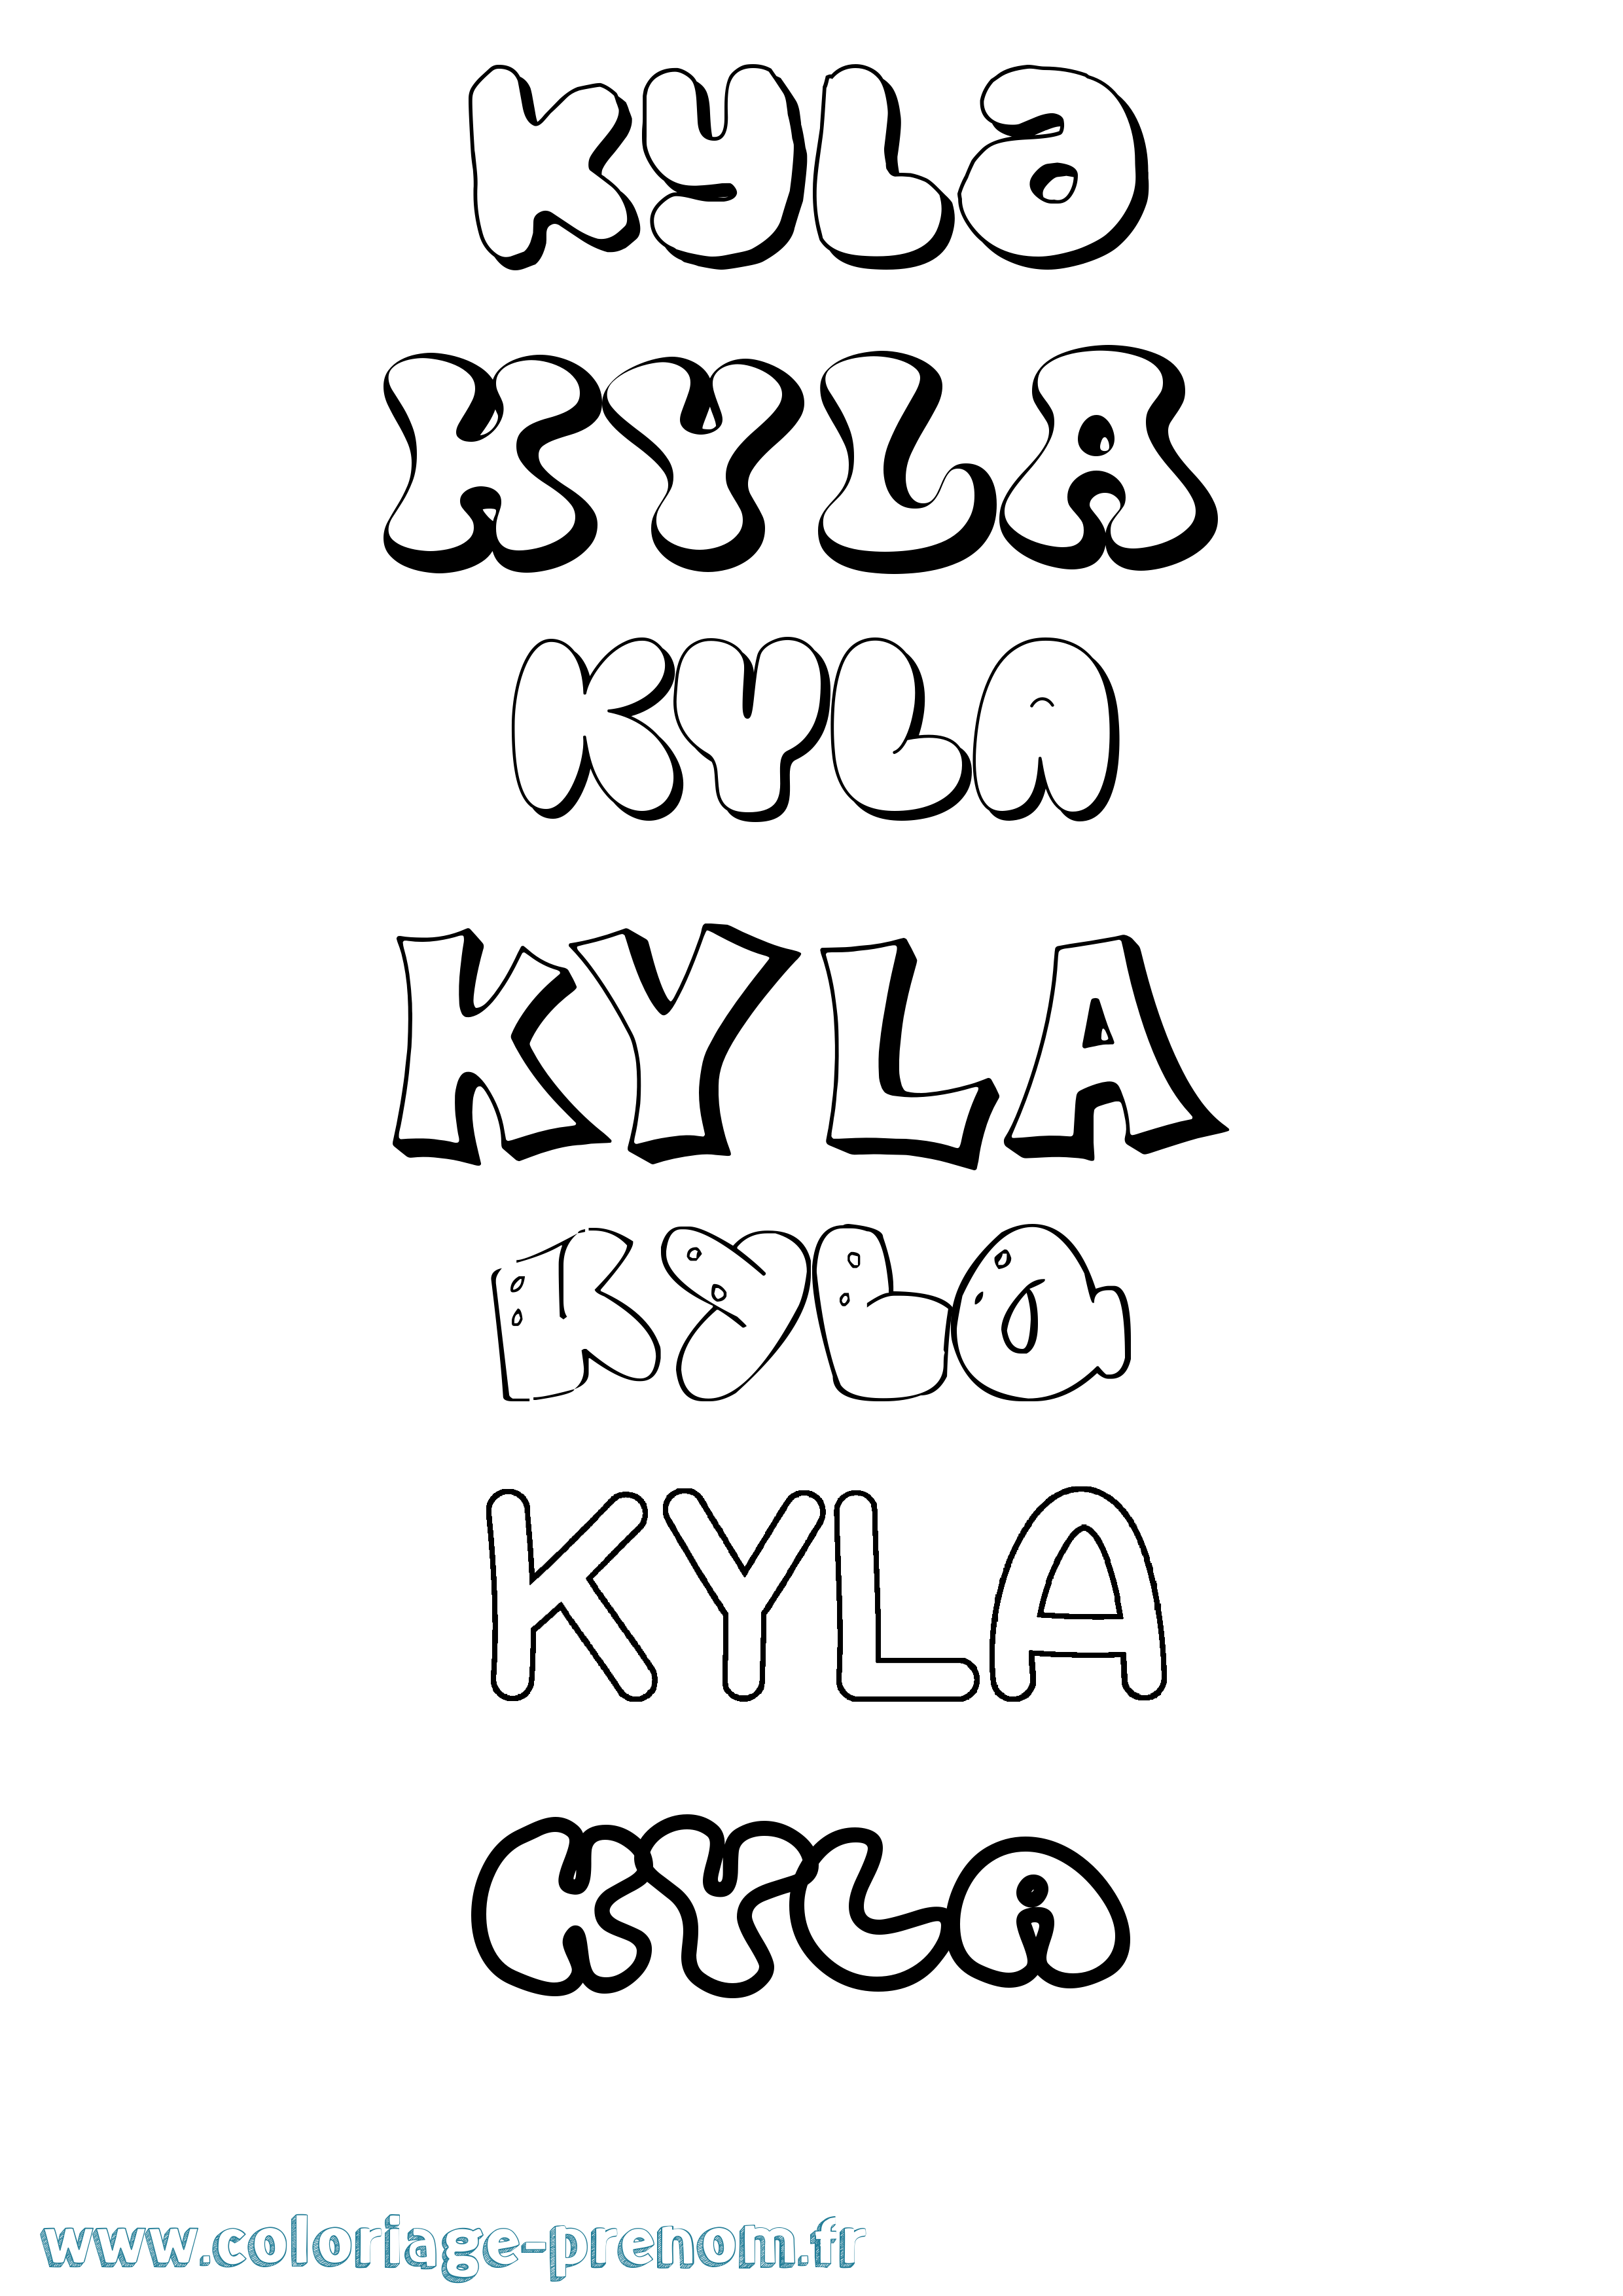 Coloriage prénom Kyla Bubble